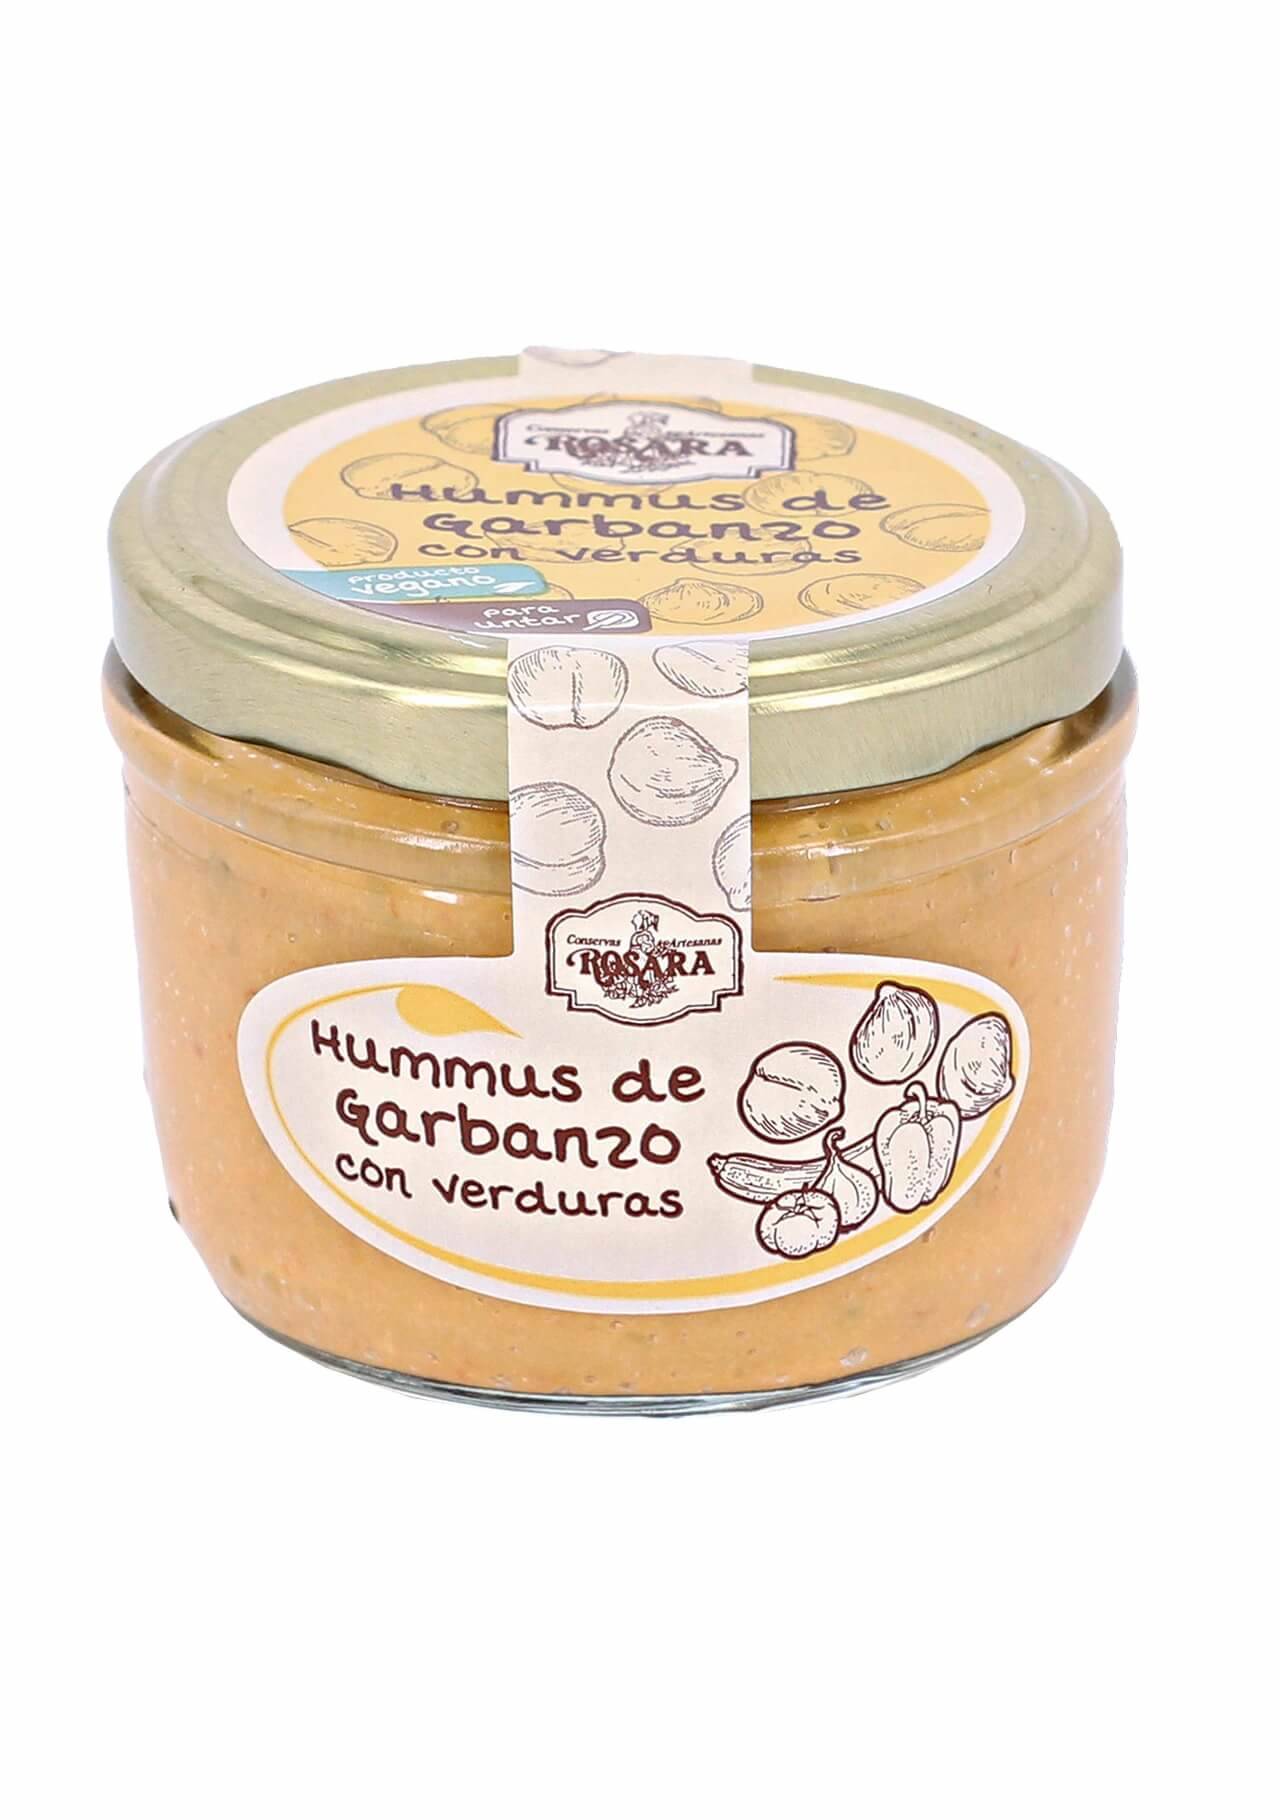 Hummus mercadona hummus de garbanzo con verduras El Corte Inglés, 3,50€